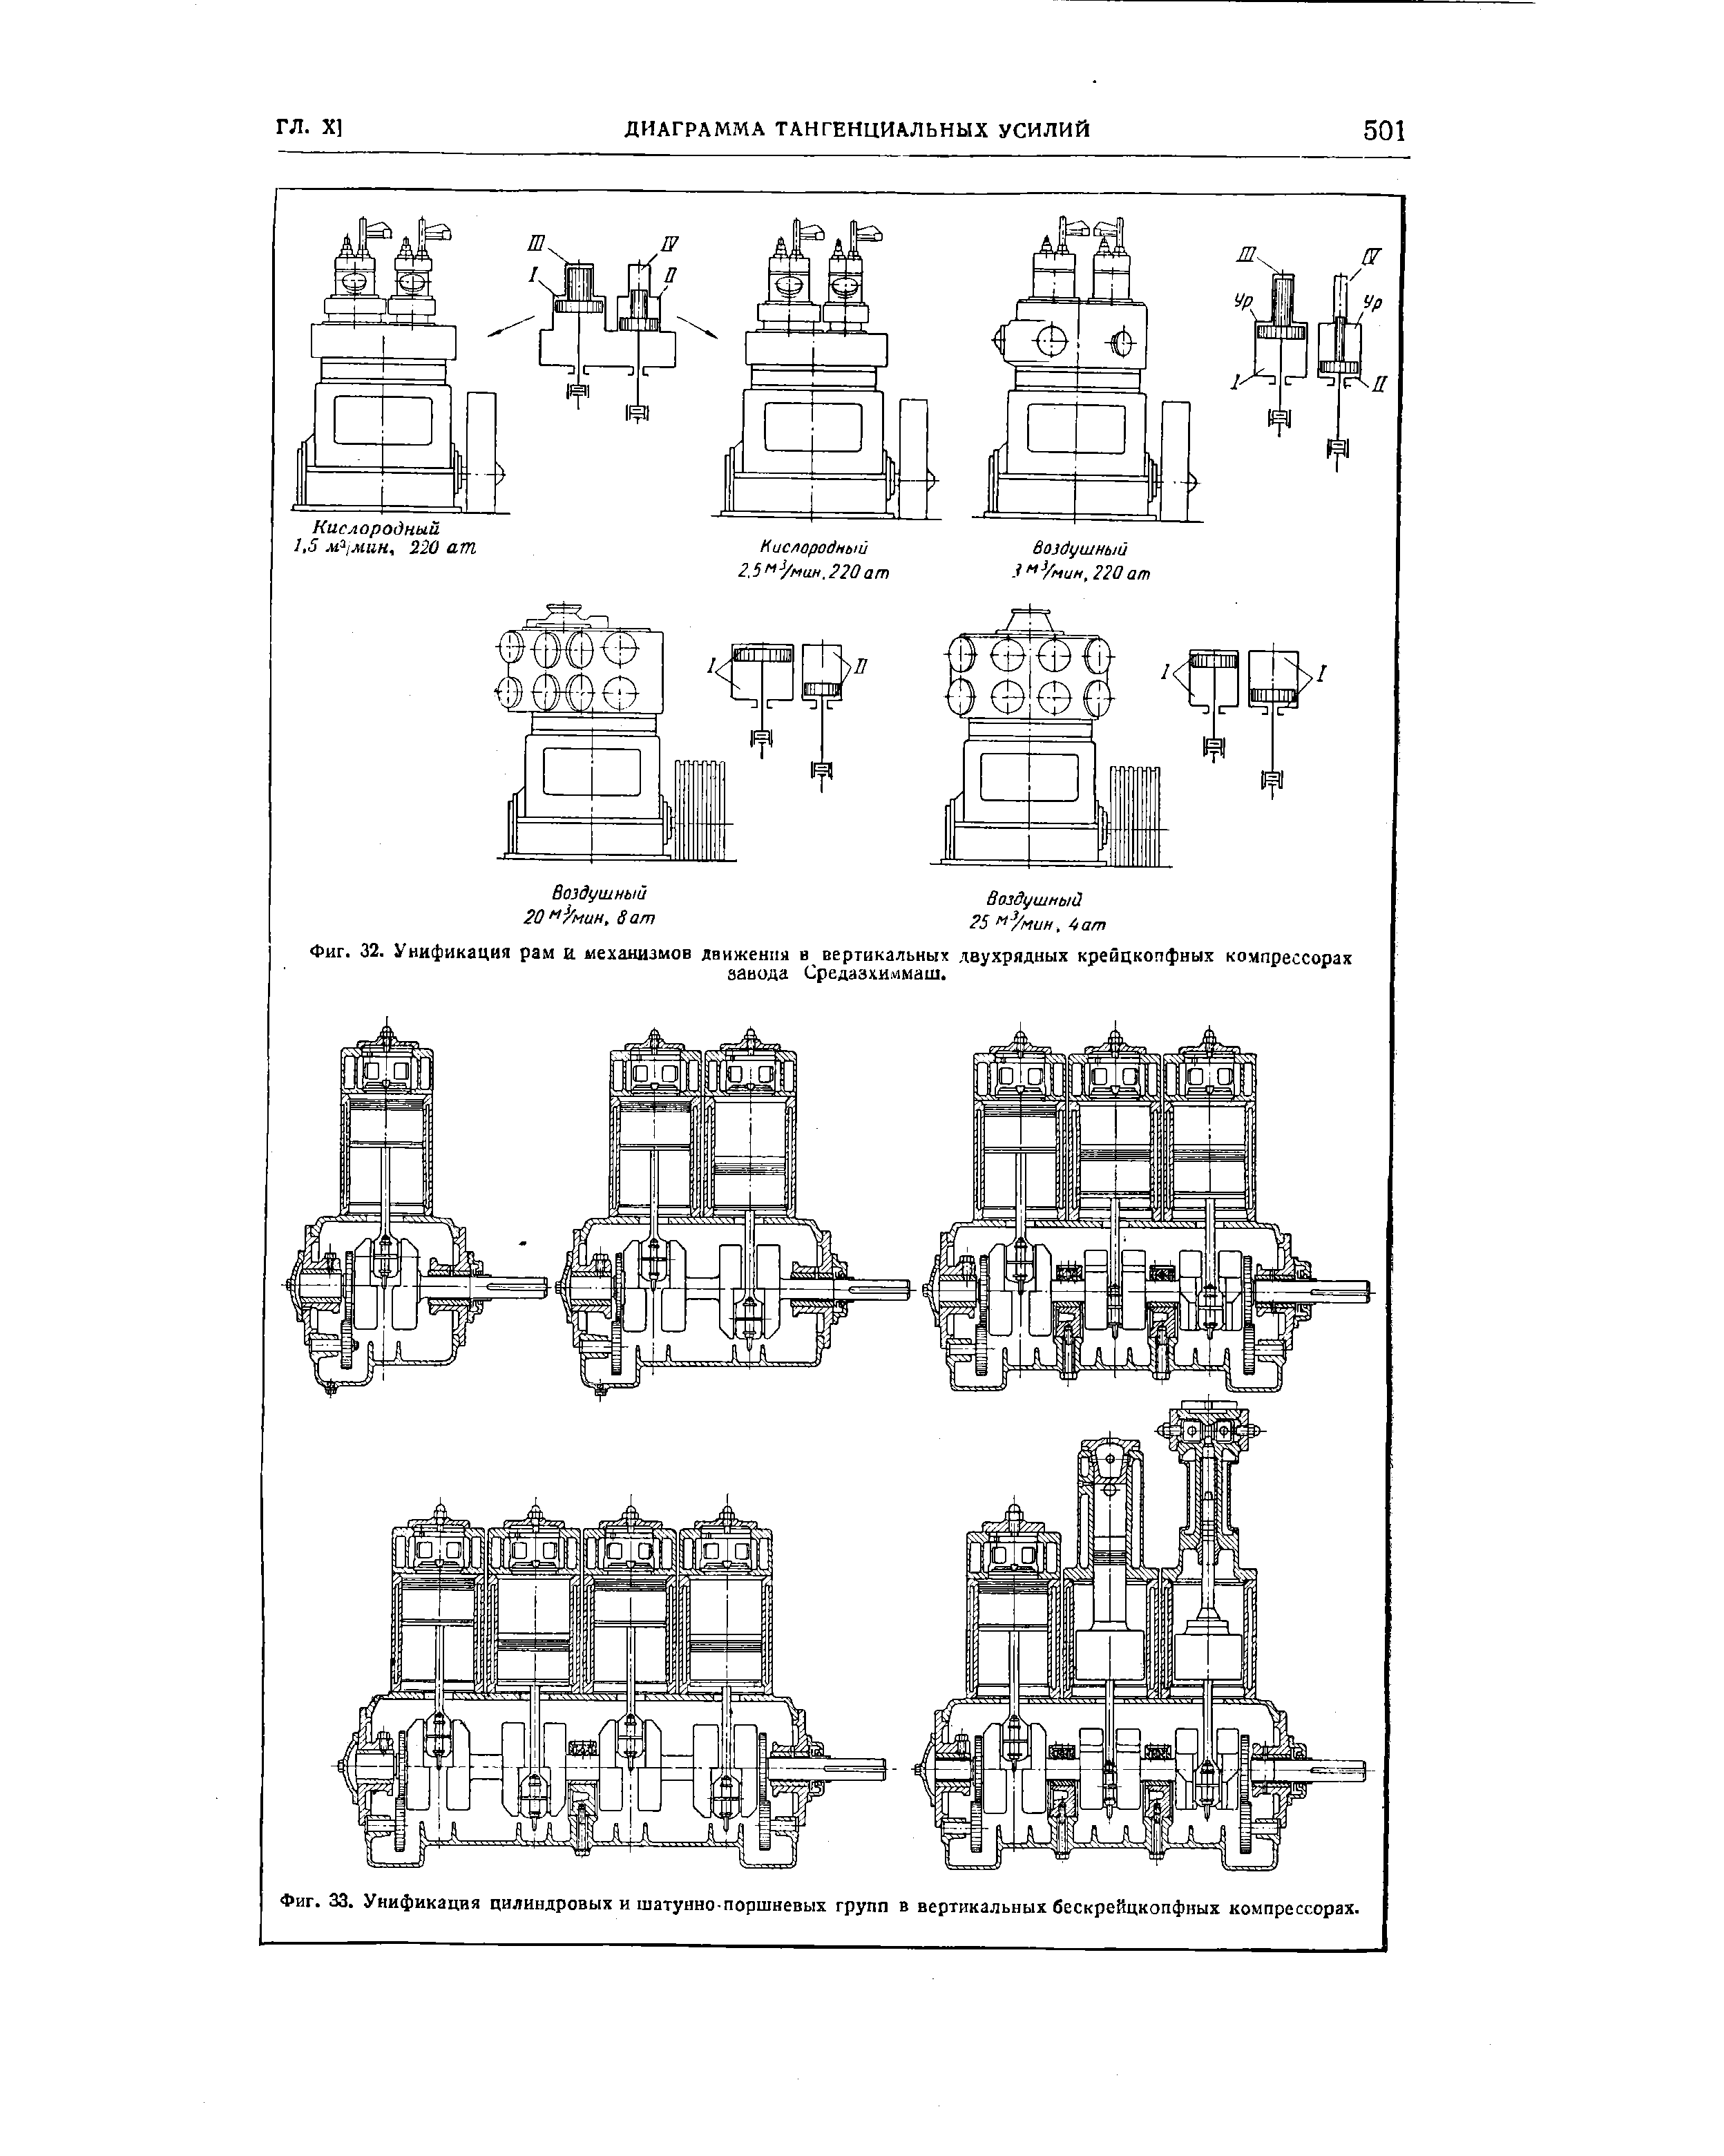 Фиг. 33. Унификация цилиндровых и шатунно-поршневых групп в вертикальных бескрейцкопфных компрессорах.
